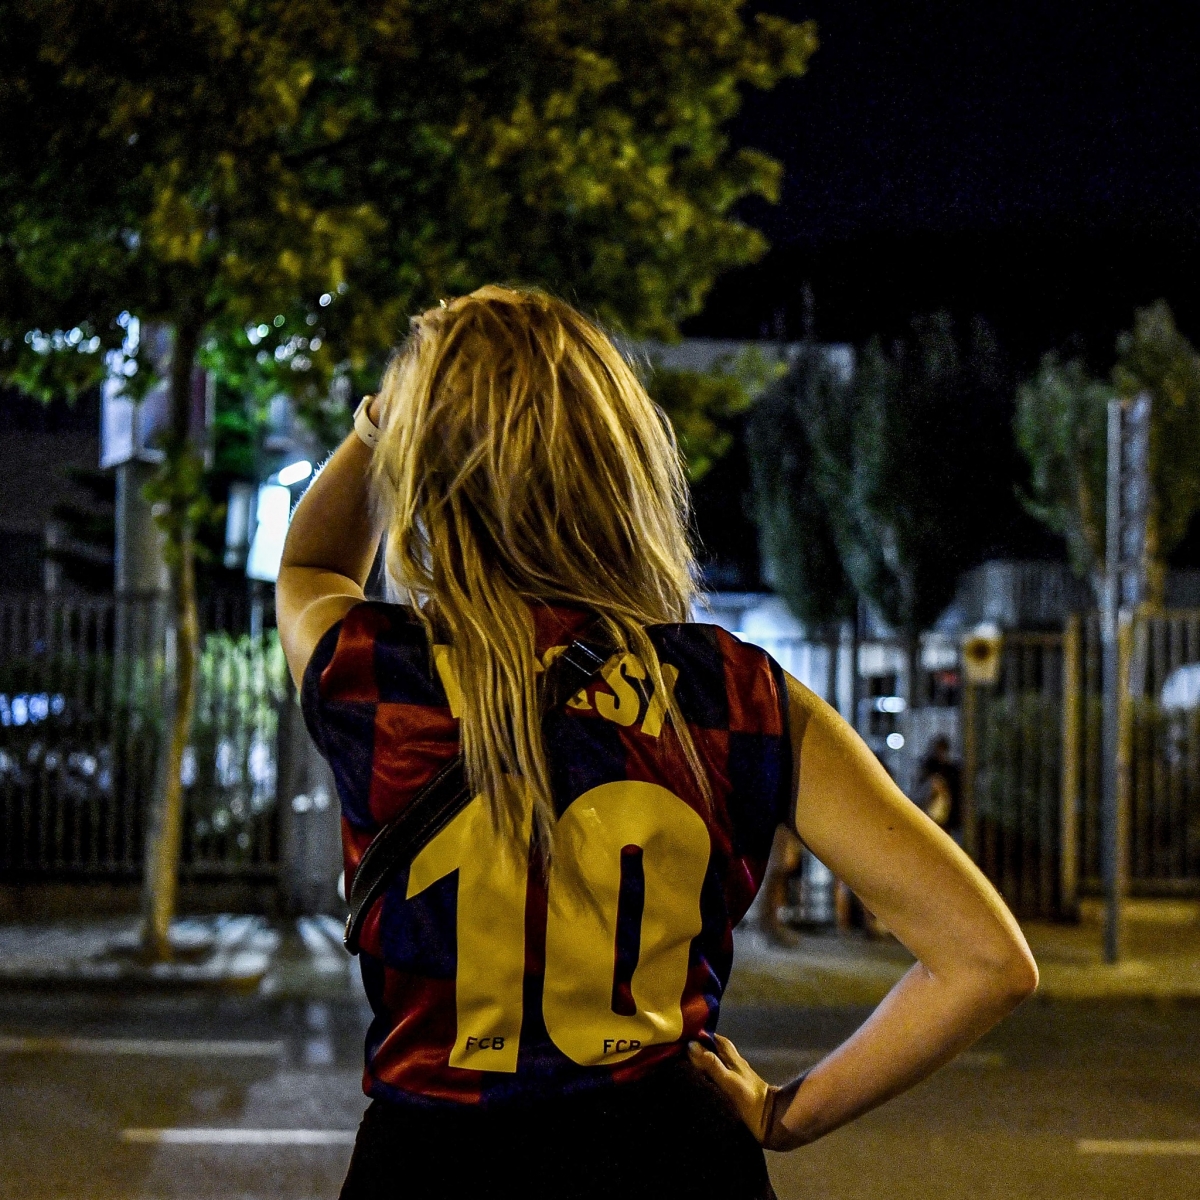 CĐV Barca bật khóc nức nở khi chính thức mất Messi - Ảnh 6.